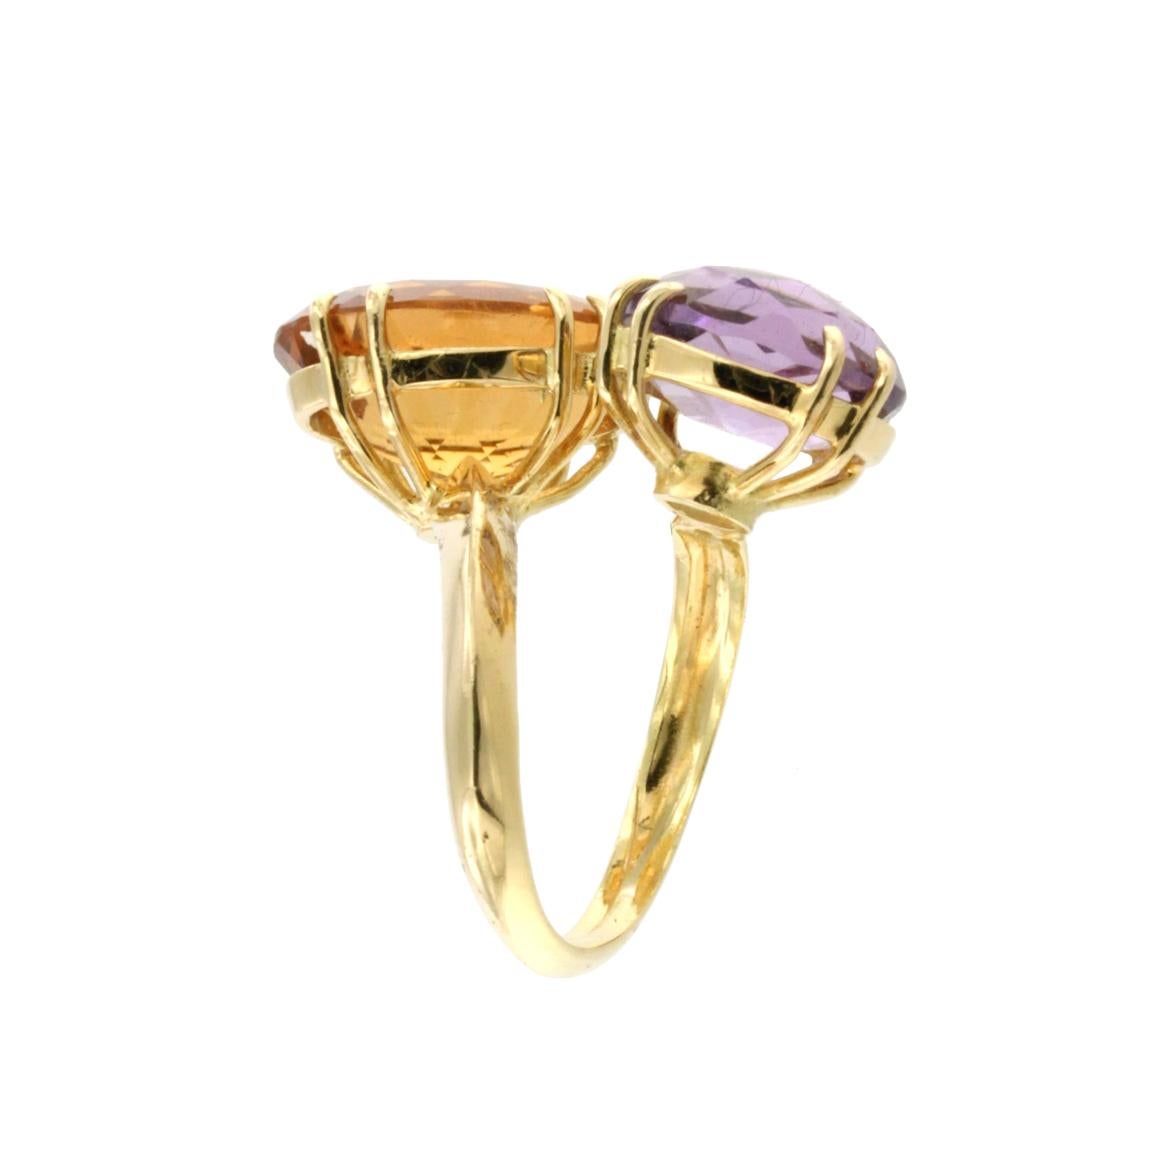  Die Kombination von Formen und Farben hat einen einzigartigen, modischen und modernen Ring aus 18 Karat Gelbgold mit farbigen Steinen geschaffen. Hergestellt in Italien von Stanoppi Jewellery seit 1948.
Ring aus 18k Gelbgold mit Amethyast